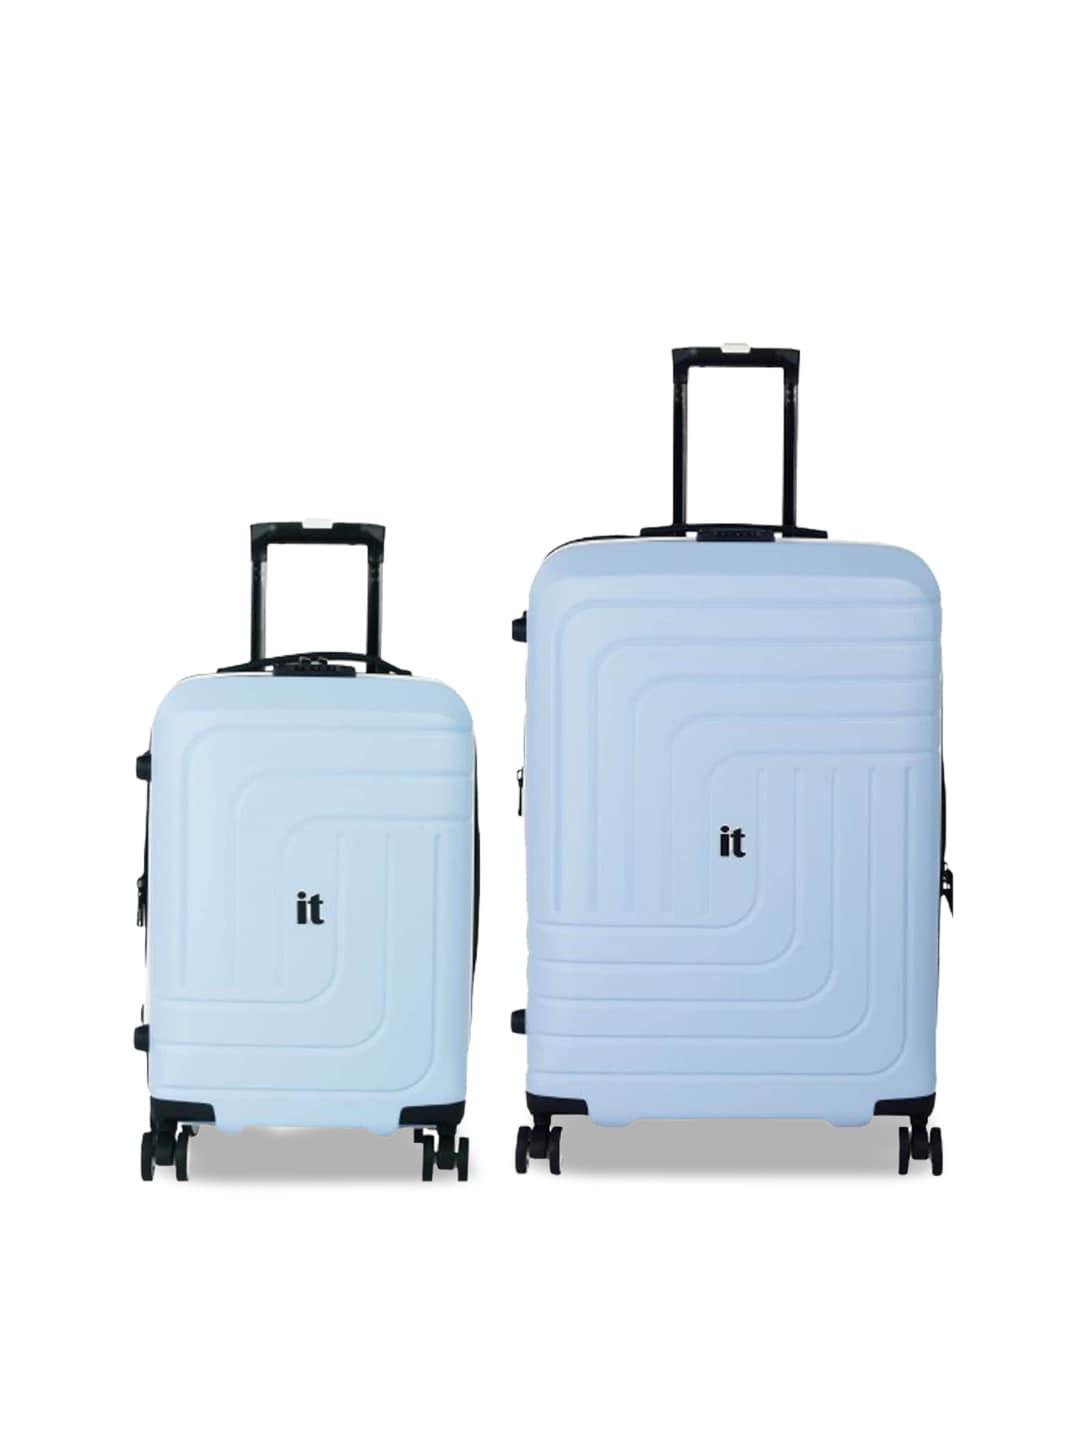 IT luggage Set of 2 Hard-Sided Large Trolley Bag